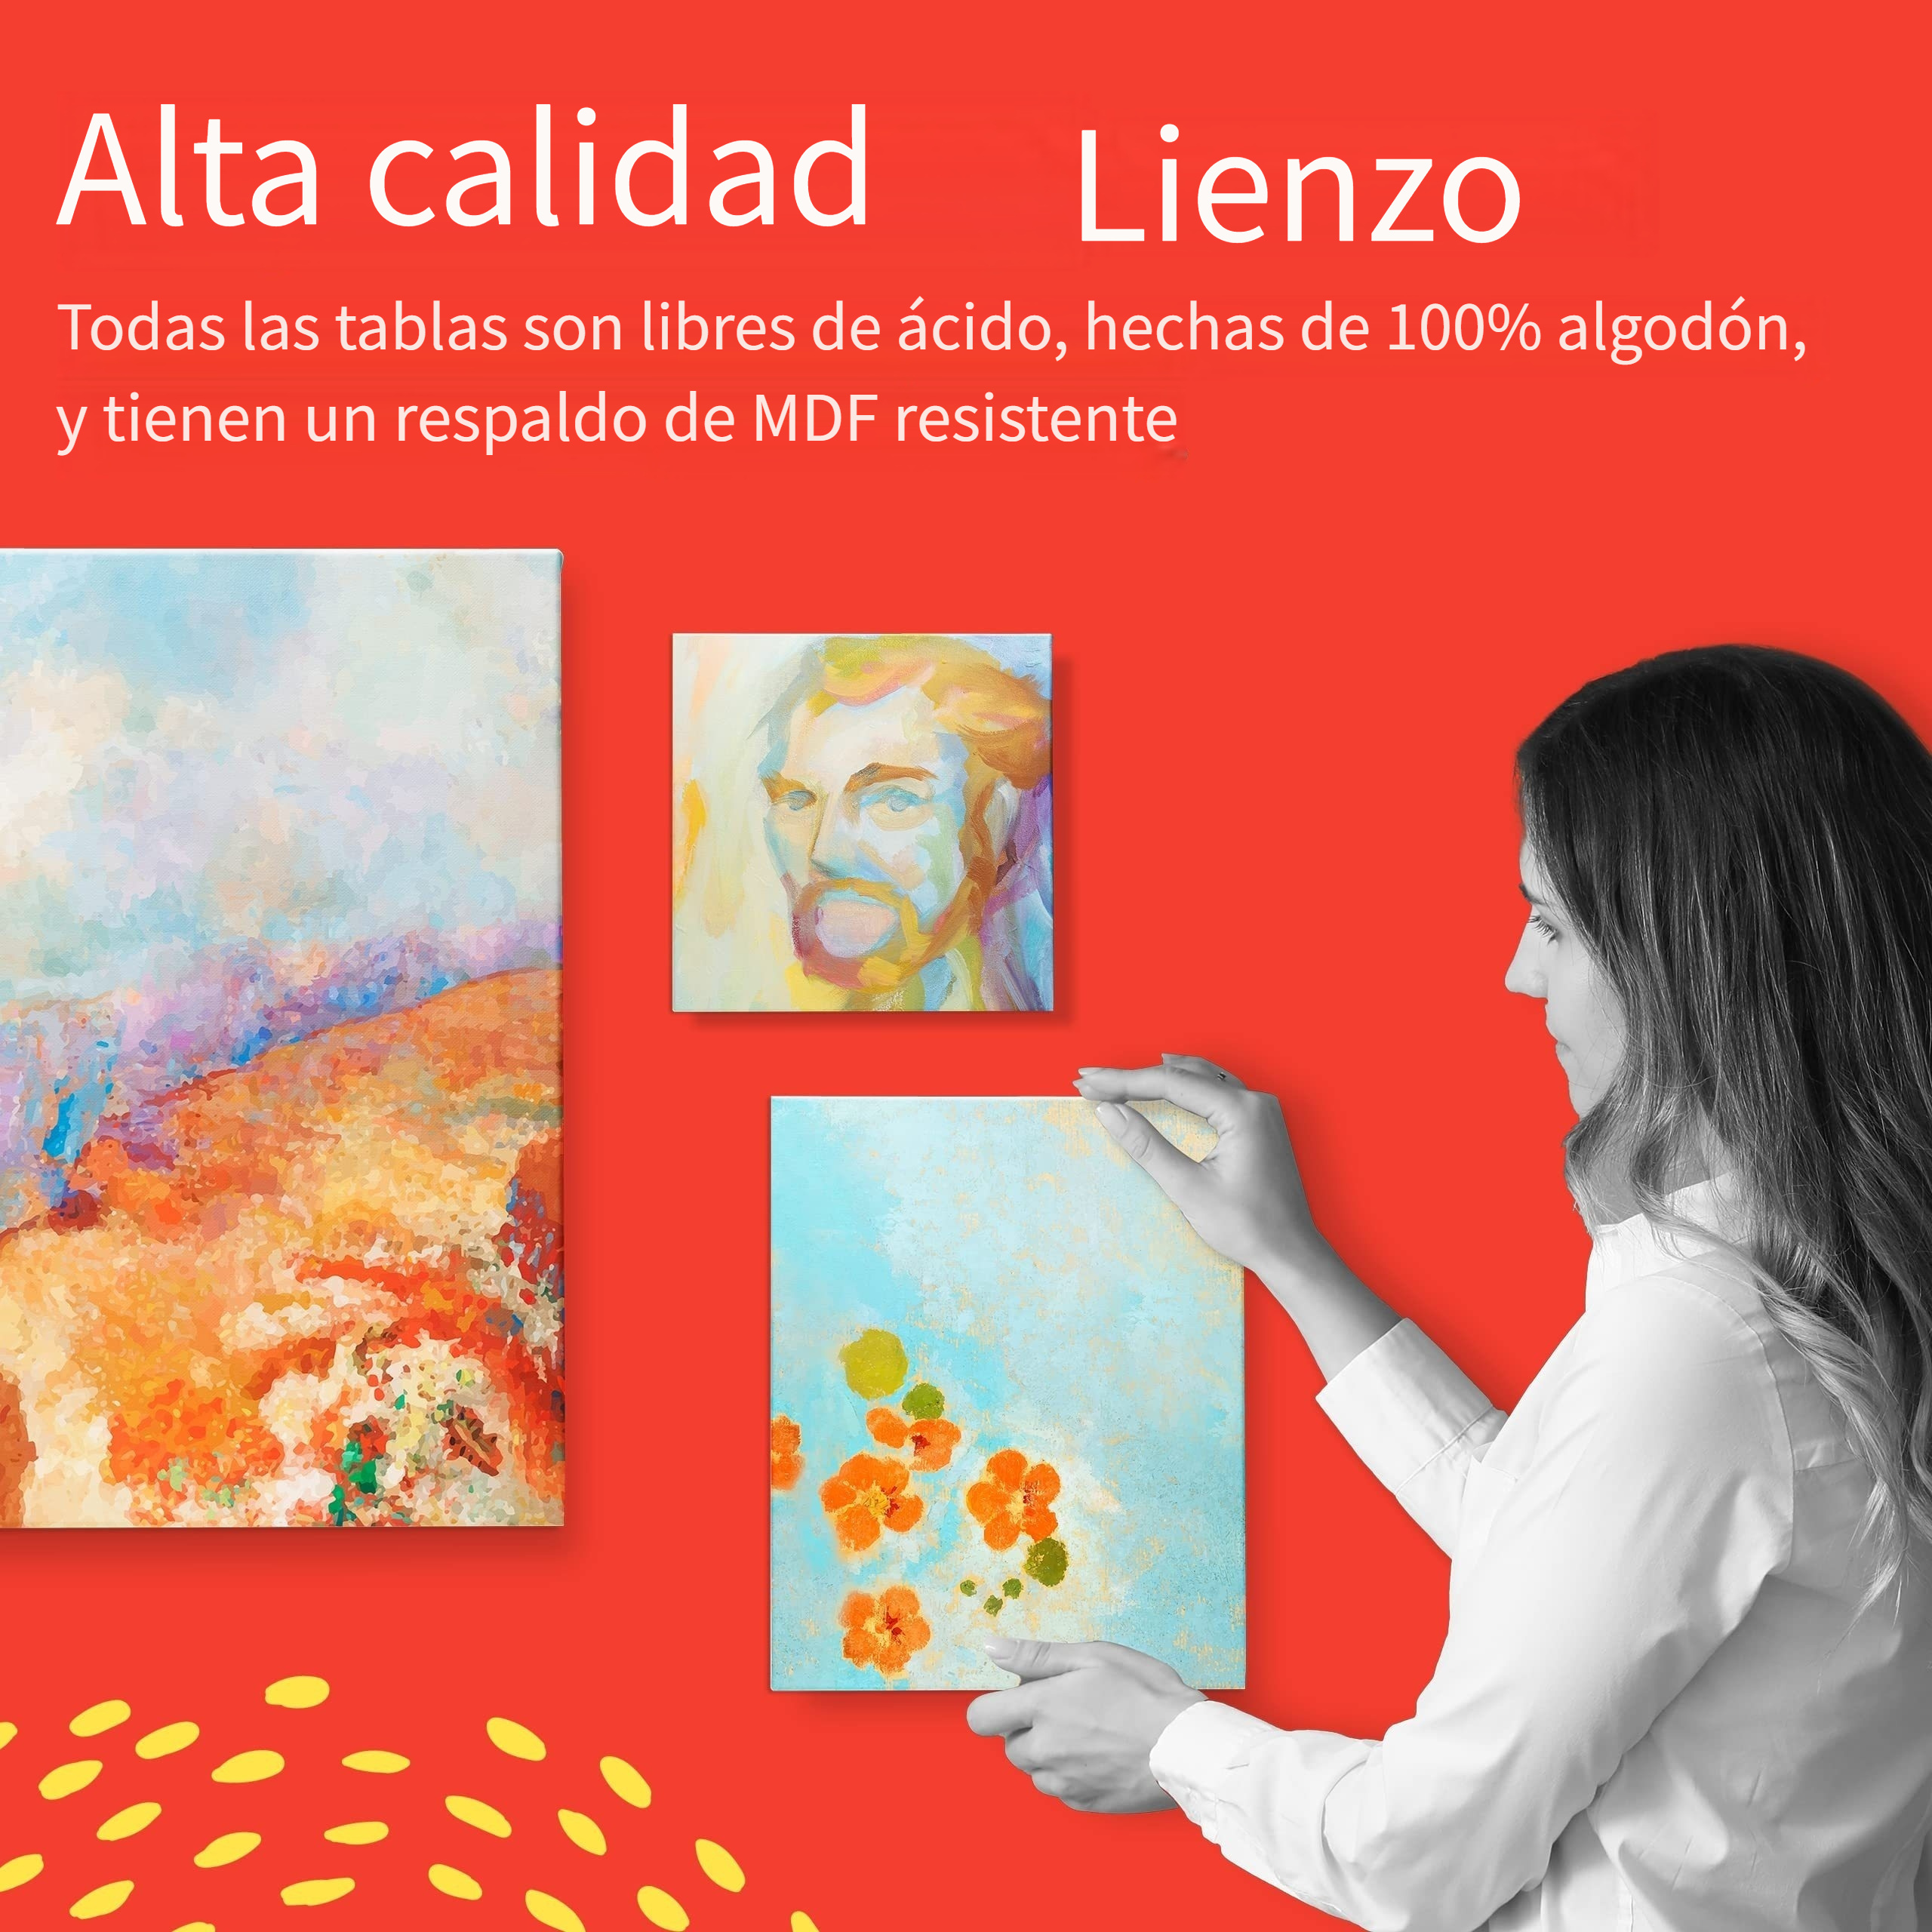 Lienzo Grande en Blanco para Pintar 100 x 100 x 3.4 cm, 100% algodón.  Válido para todo tipo de pinturas: acrílica, óleo, acuarela Indicado para  amantes de la pintura y profesionales. 